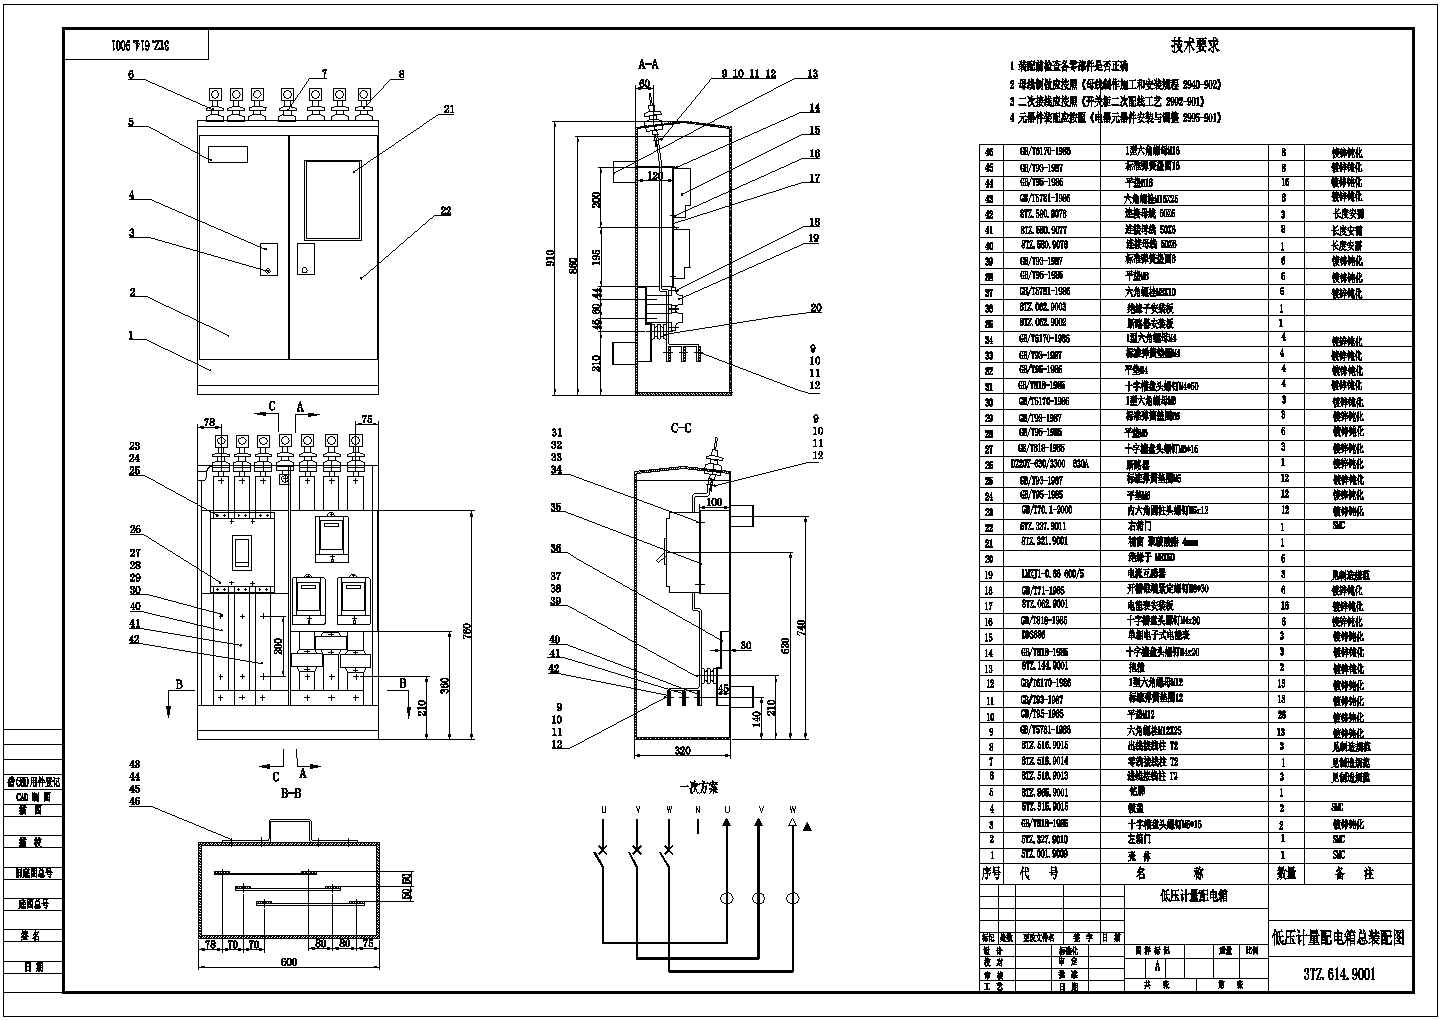 低压计量配电箱总装配图及详细说明